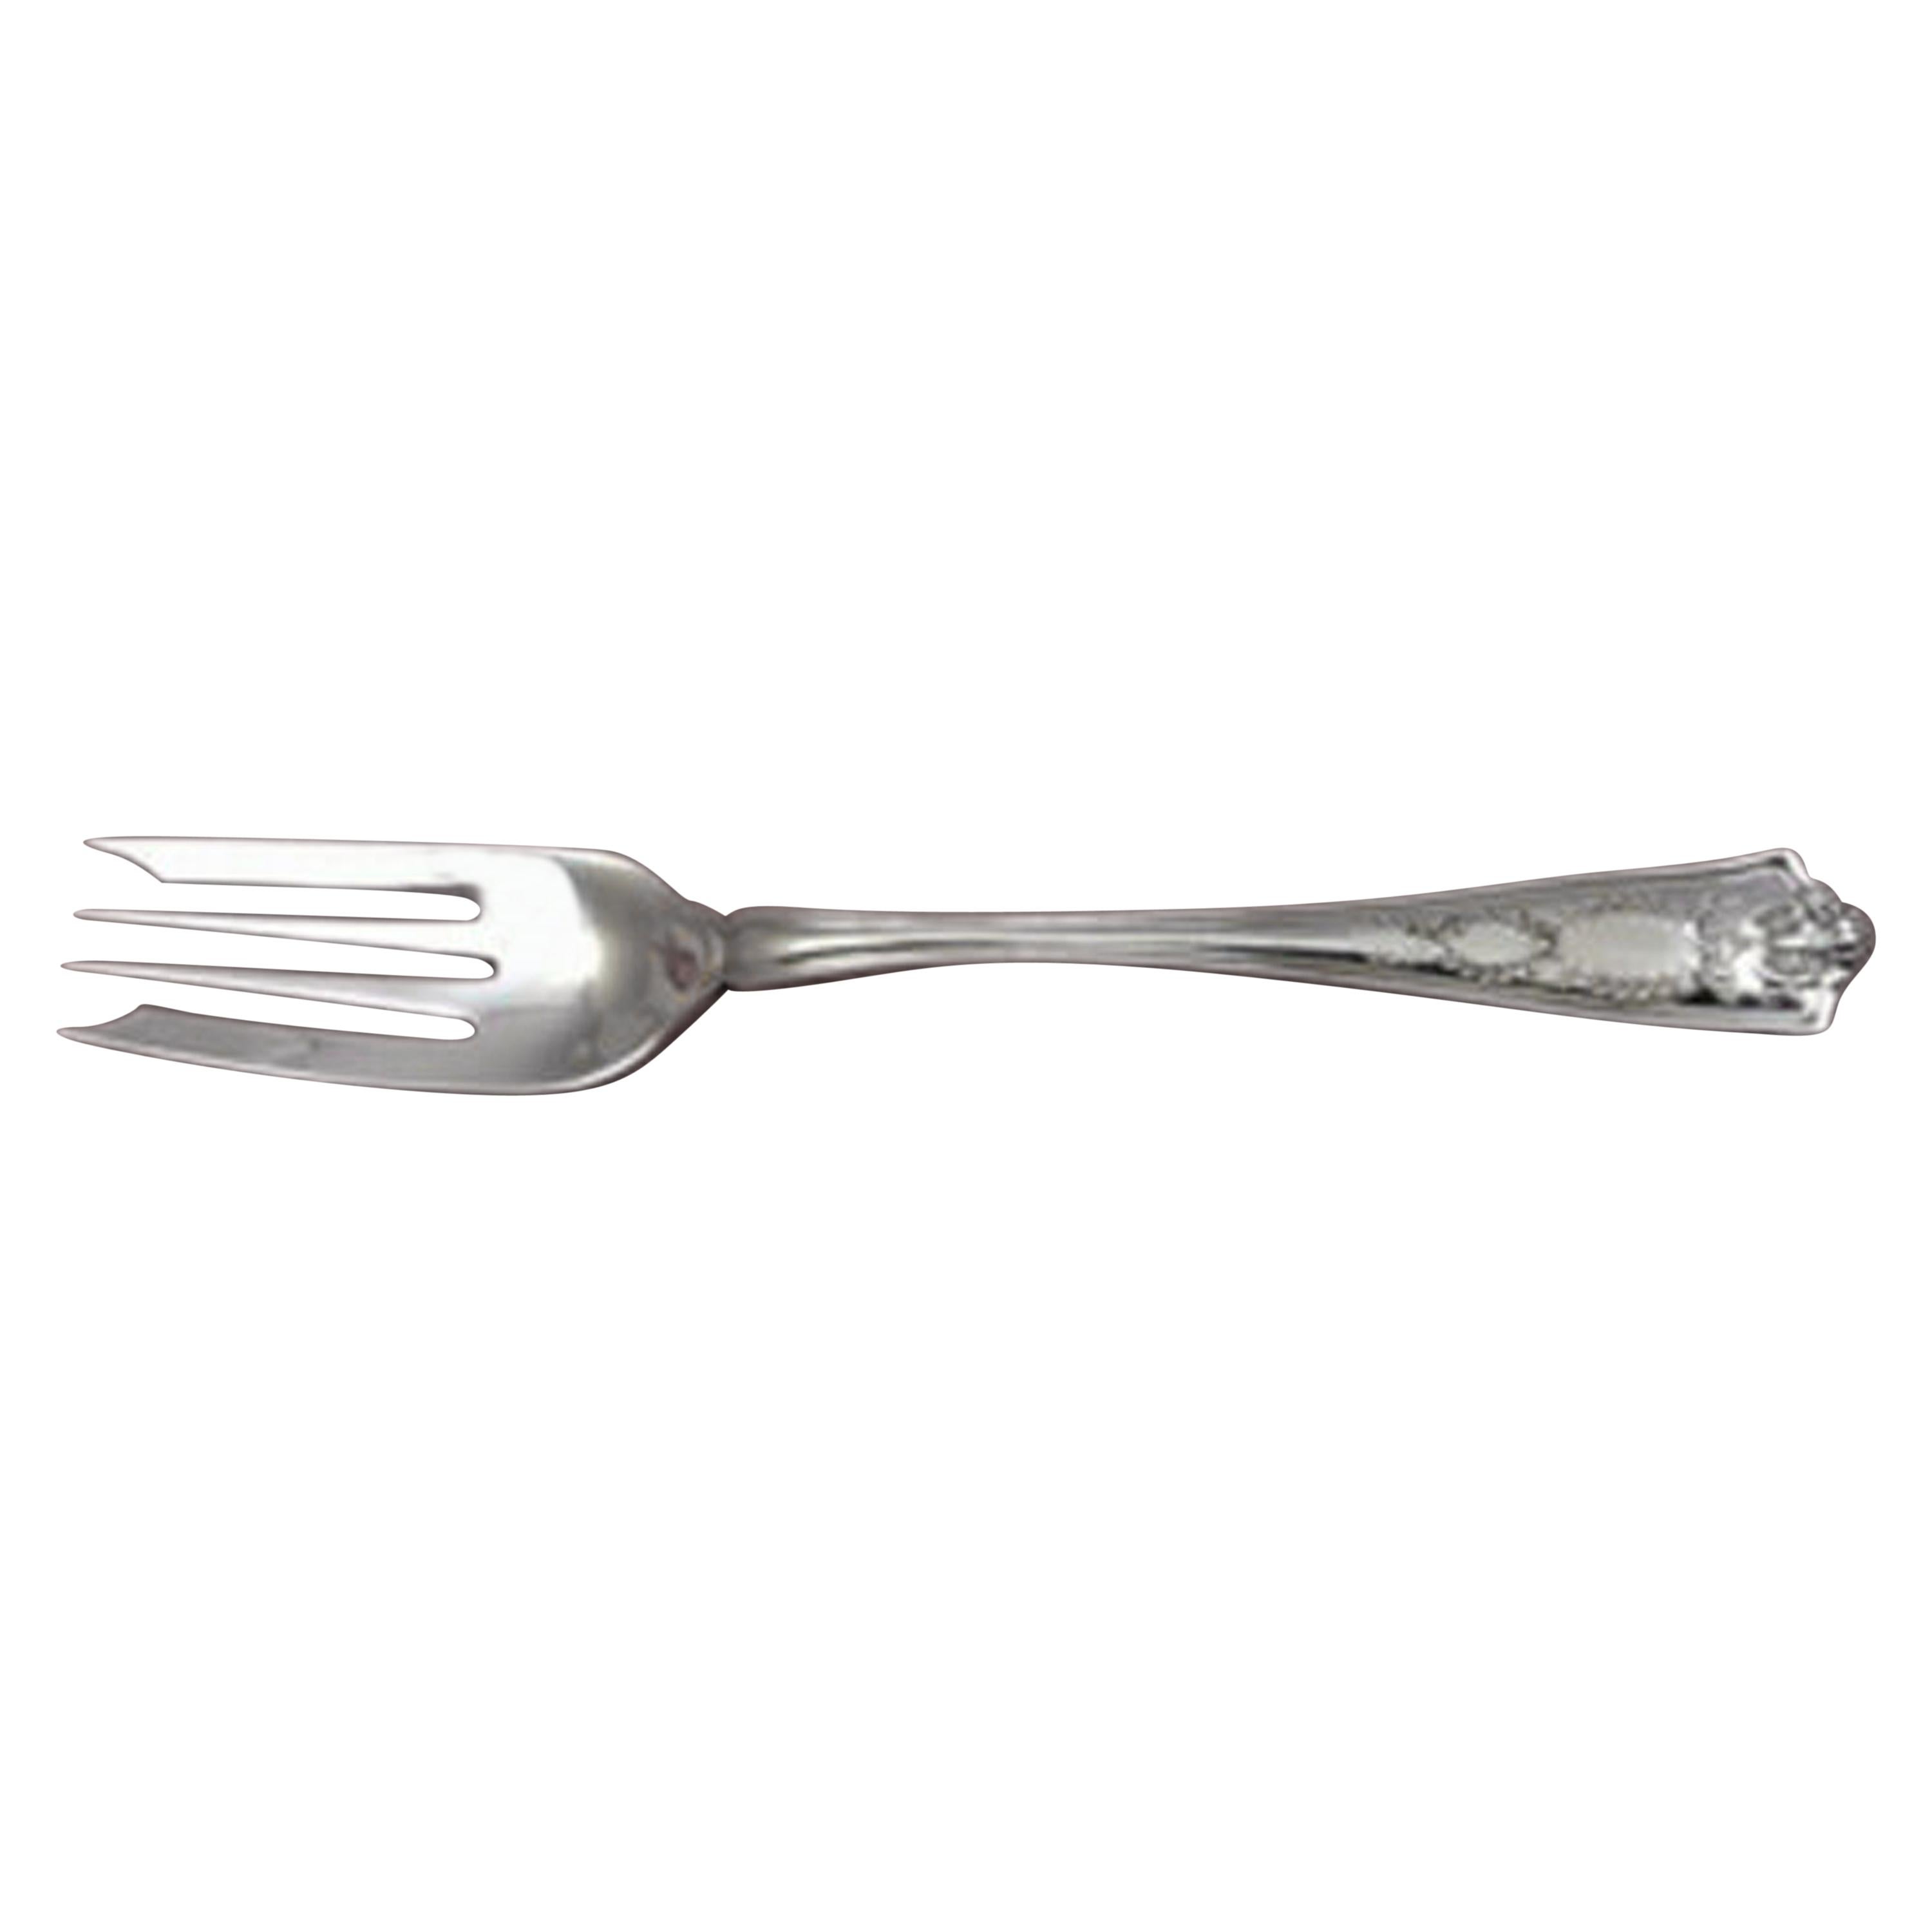 Sterling silver salad fork, 4-tine, 7